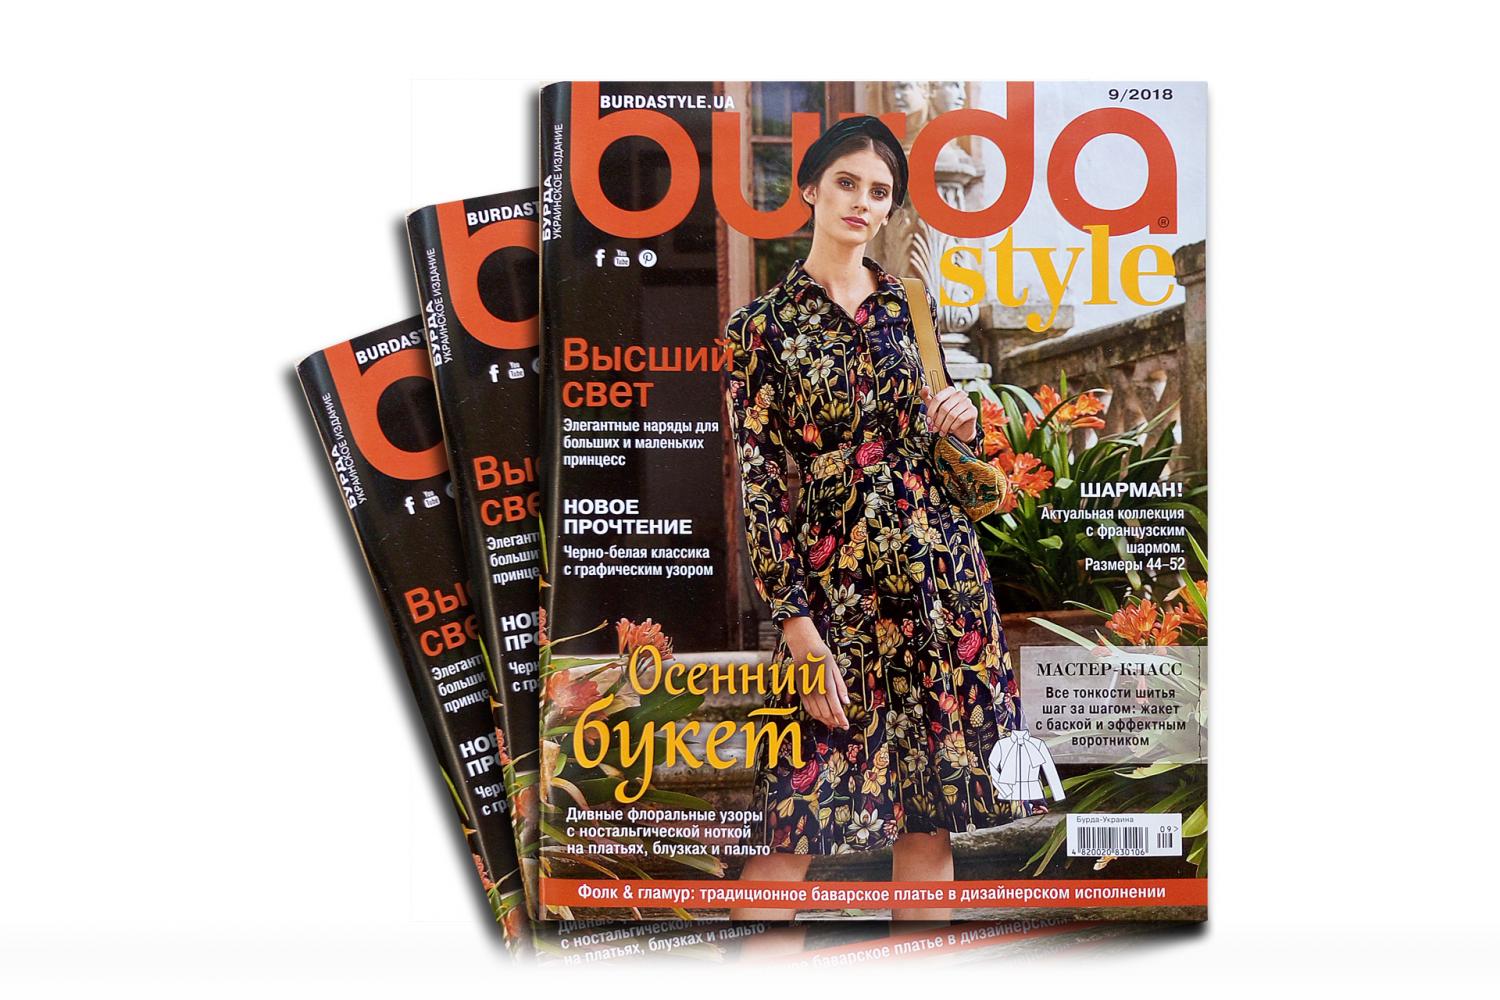 Журнал "Бурда" 09/2018 - 16164